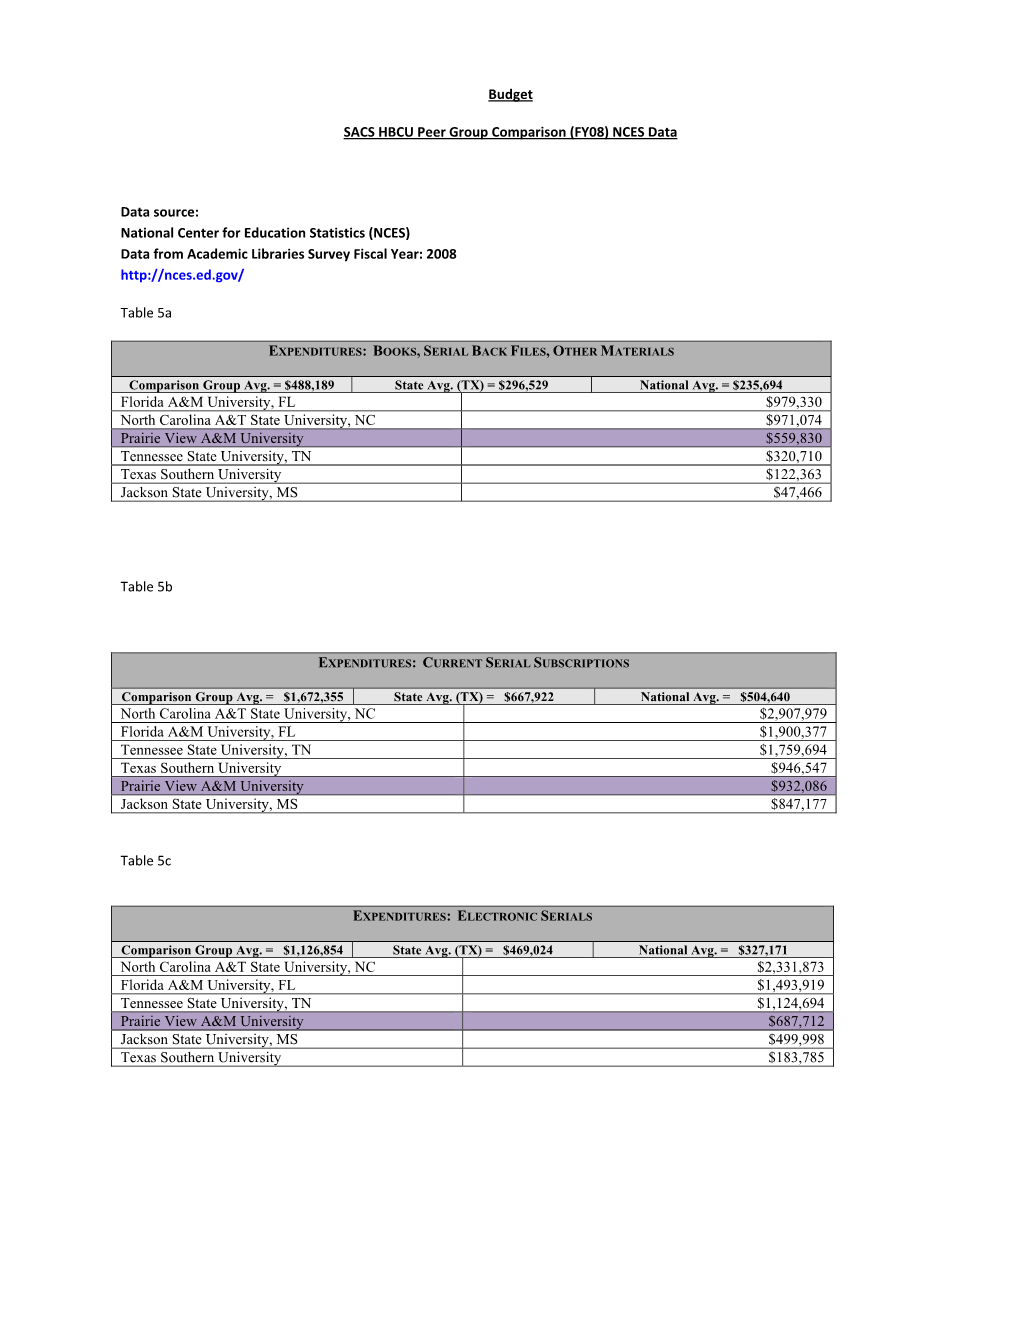 Budget SACS HBCU Peer Group Comparison (FY08) NCES Data